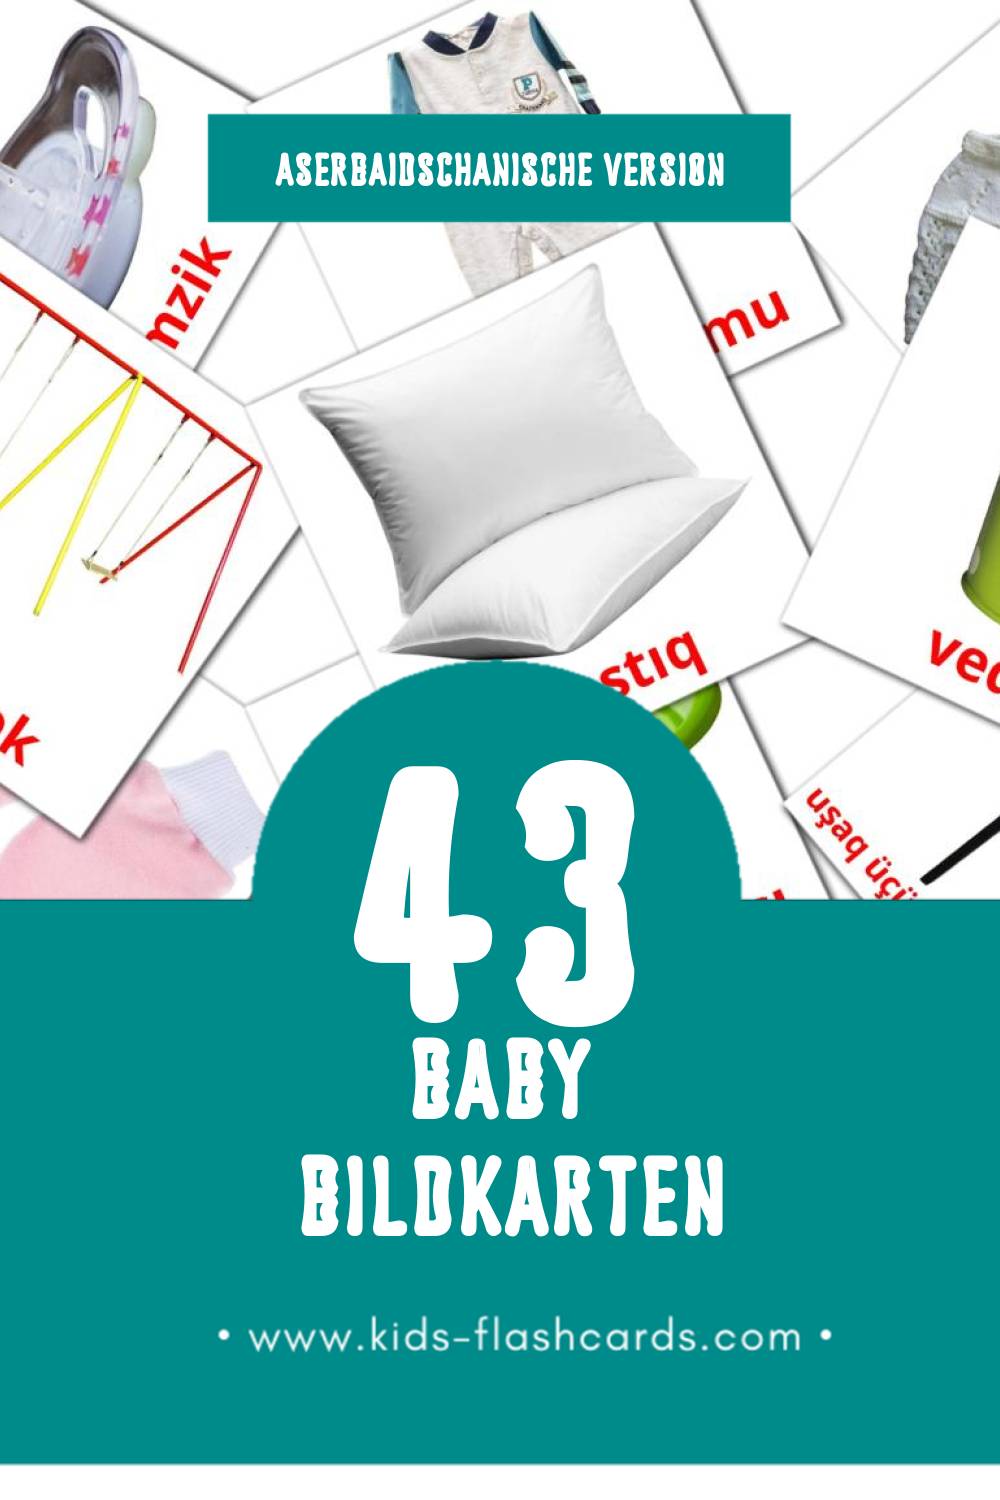 Visual Körpə Flashcards für Kleinkinder (43 Karten in Aserbaidschanisch)